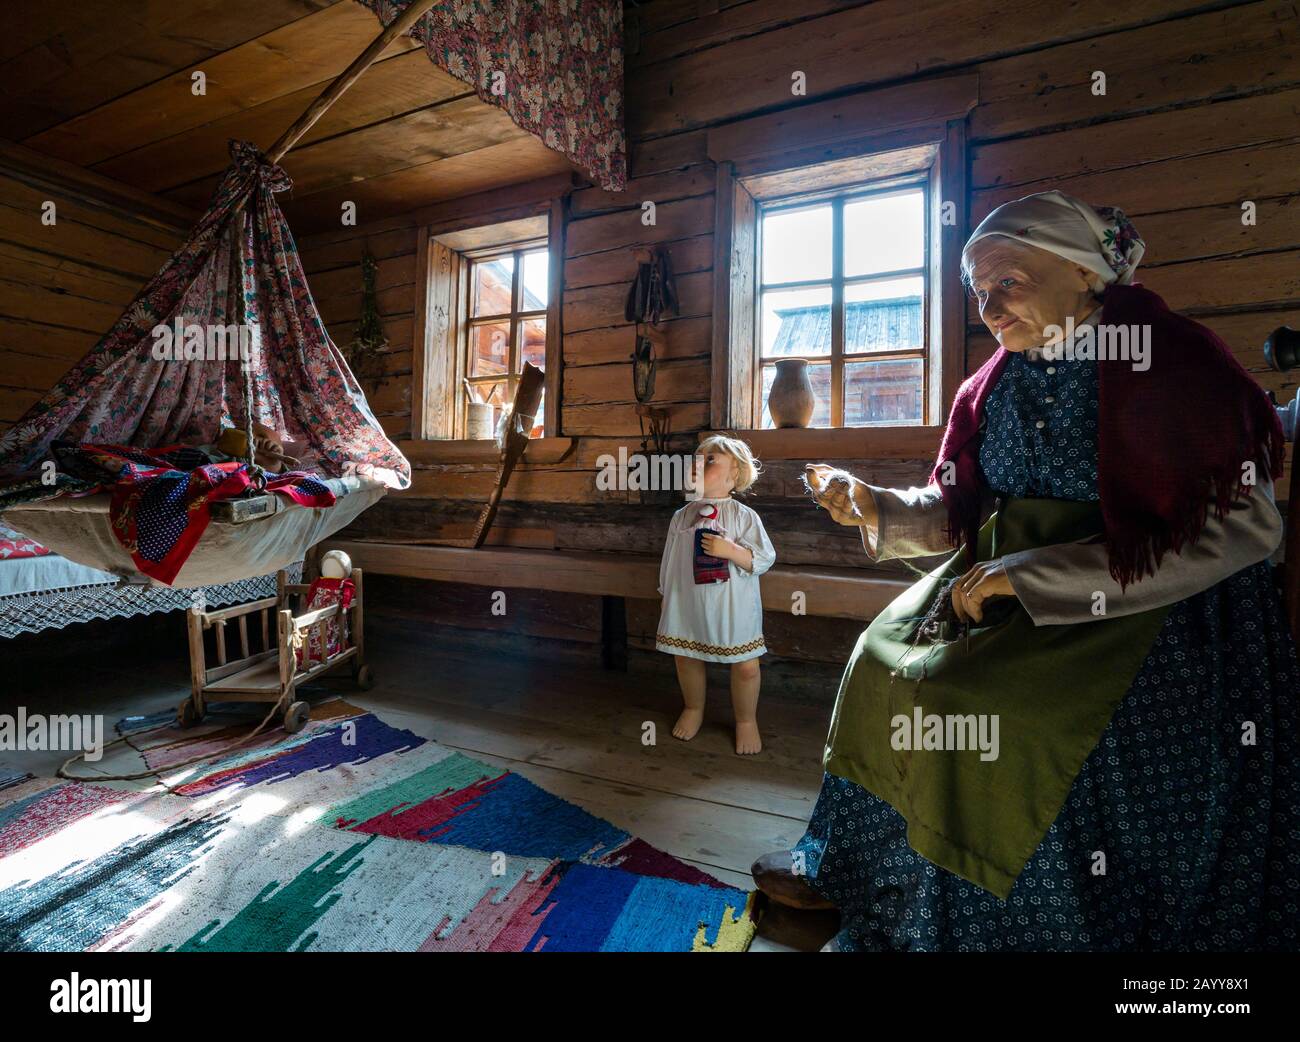 Intérieur de la maison en rondins avec des modèles en costume d'époque représentant le mode de vie traditionnel, Taltsy Museum of Wooden Architecture, Siberia, Russie Banque D'Images